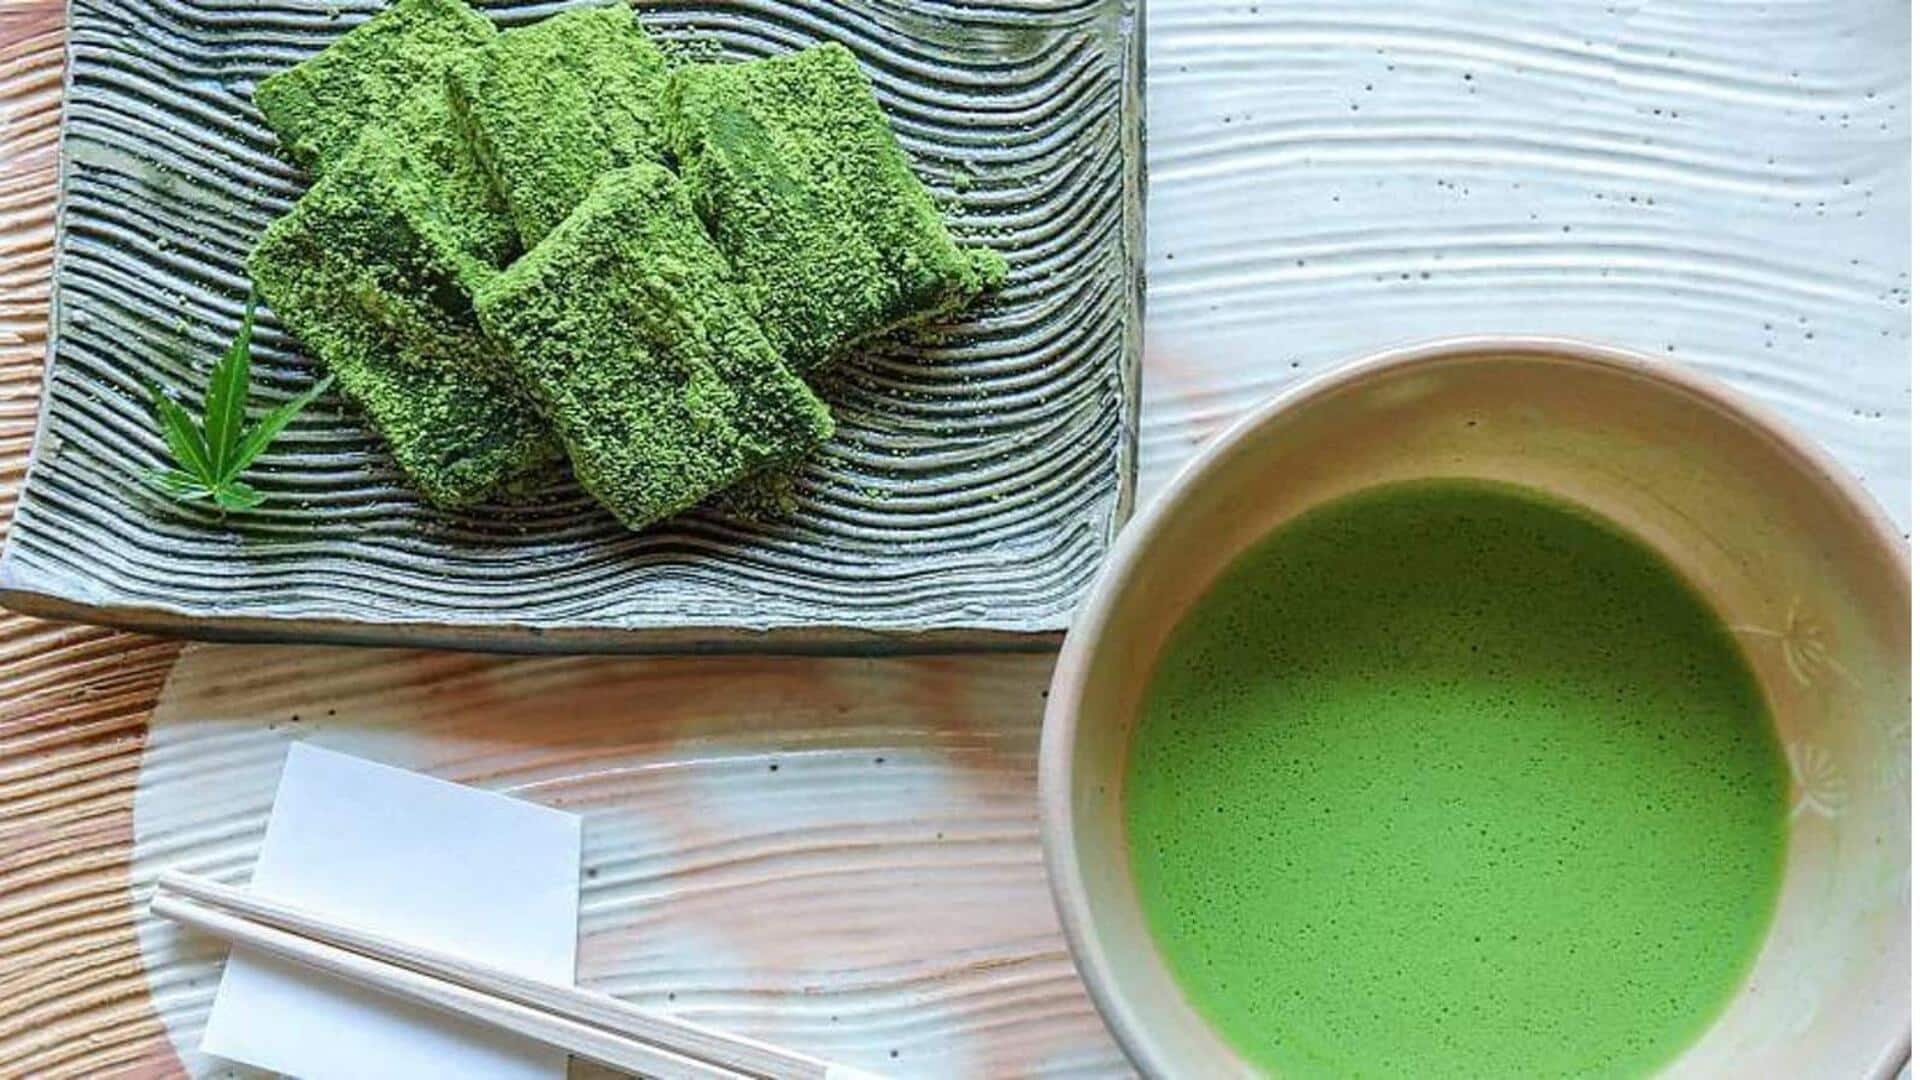 Uji, Jepang adalah surganya pecinta teh